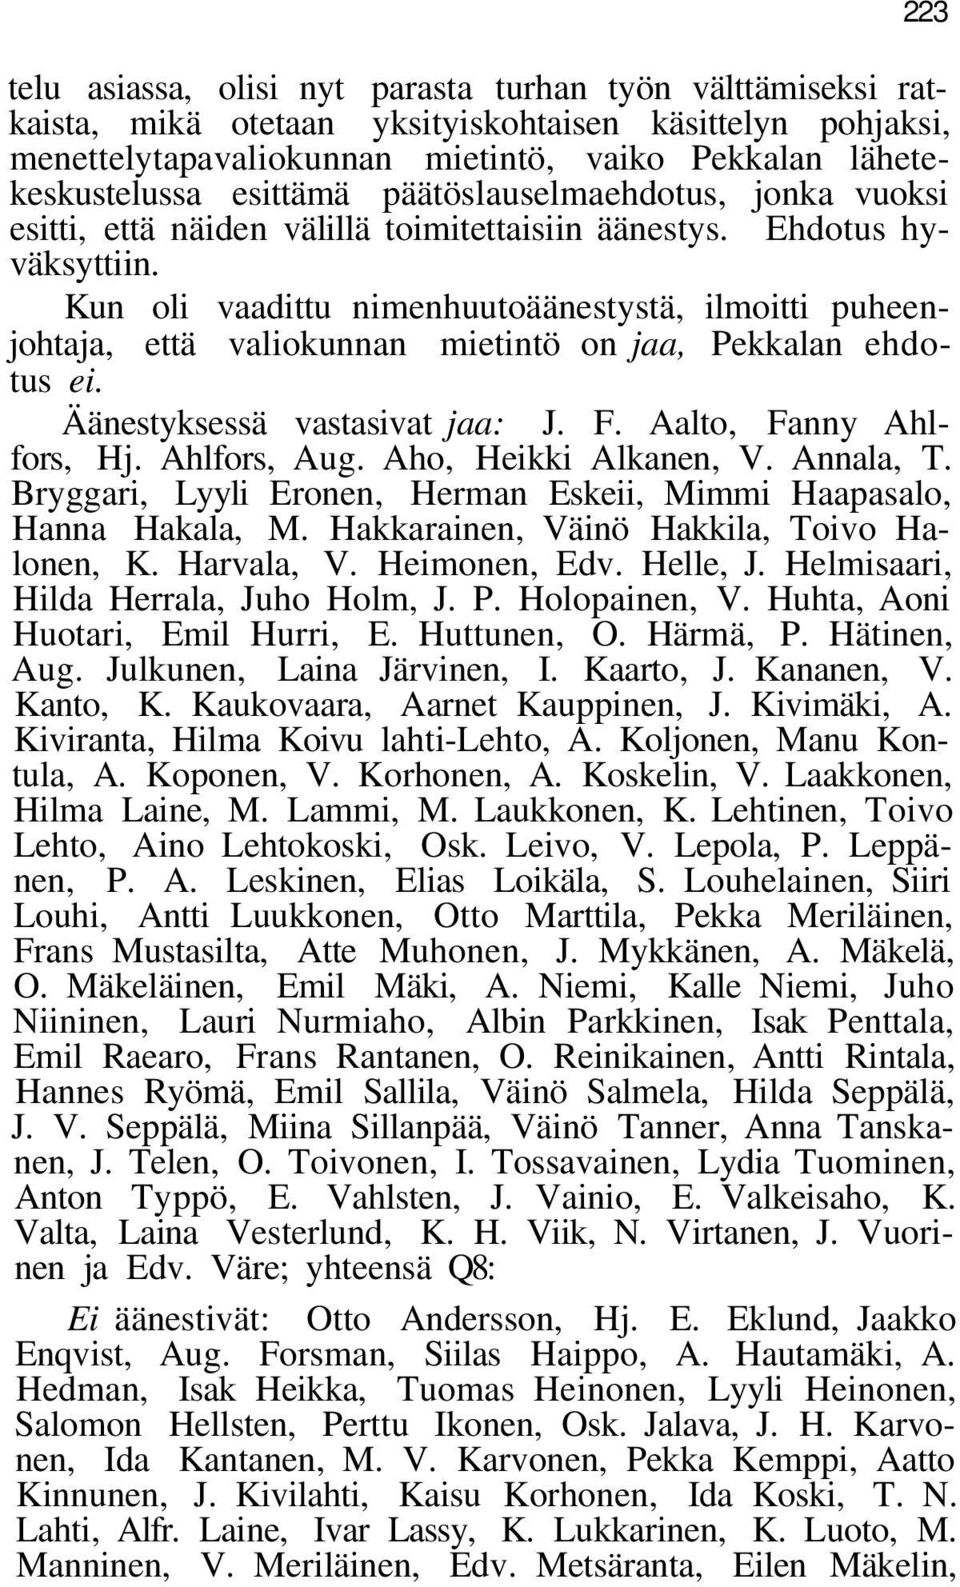 Kun oli vaadittu nimenhuutoäänestystä, ilmoitti puheenjohtaja, että valiokunnan mietintö on jaa, Pekkalan ehdotus ei. Äänestyksessä vastasivat jaa: J. F. Aalto, Fanny Ahlfors, Hj. Ahlfors, Aug.